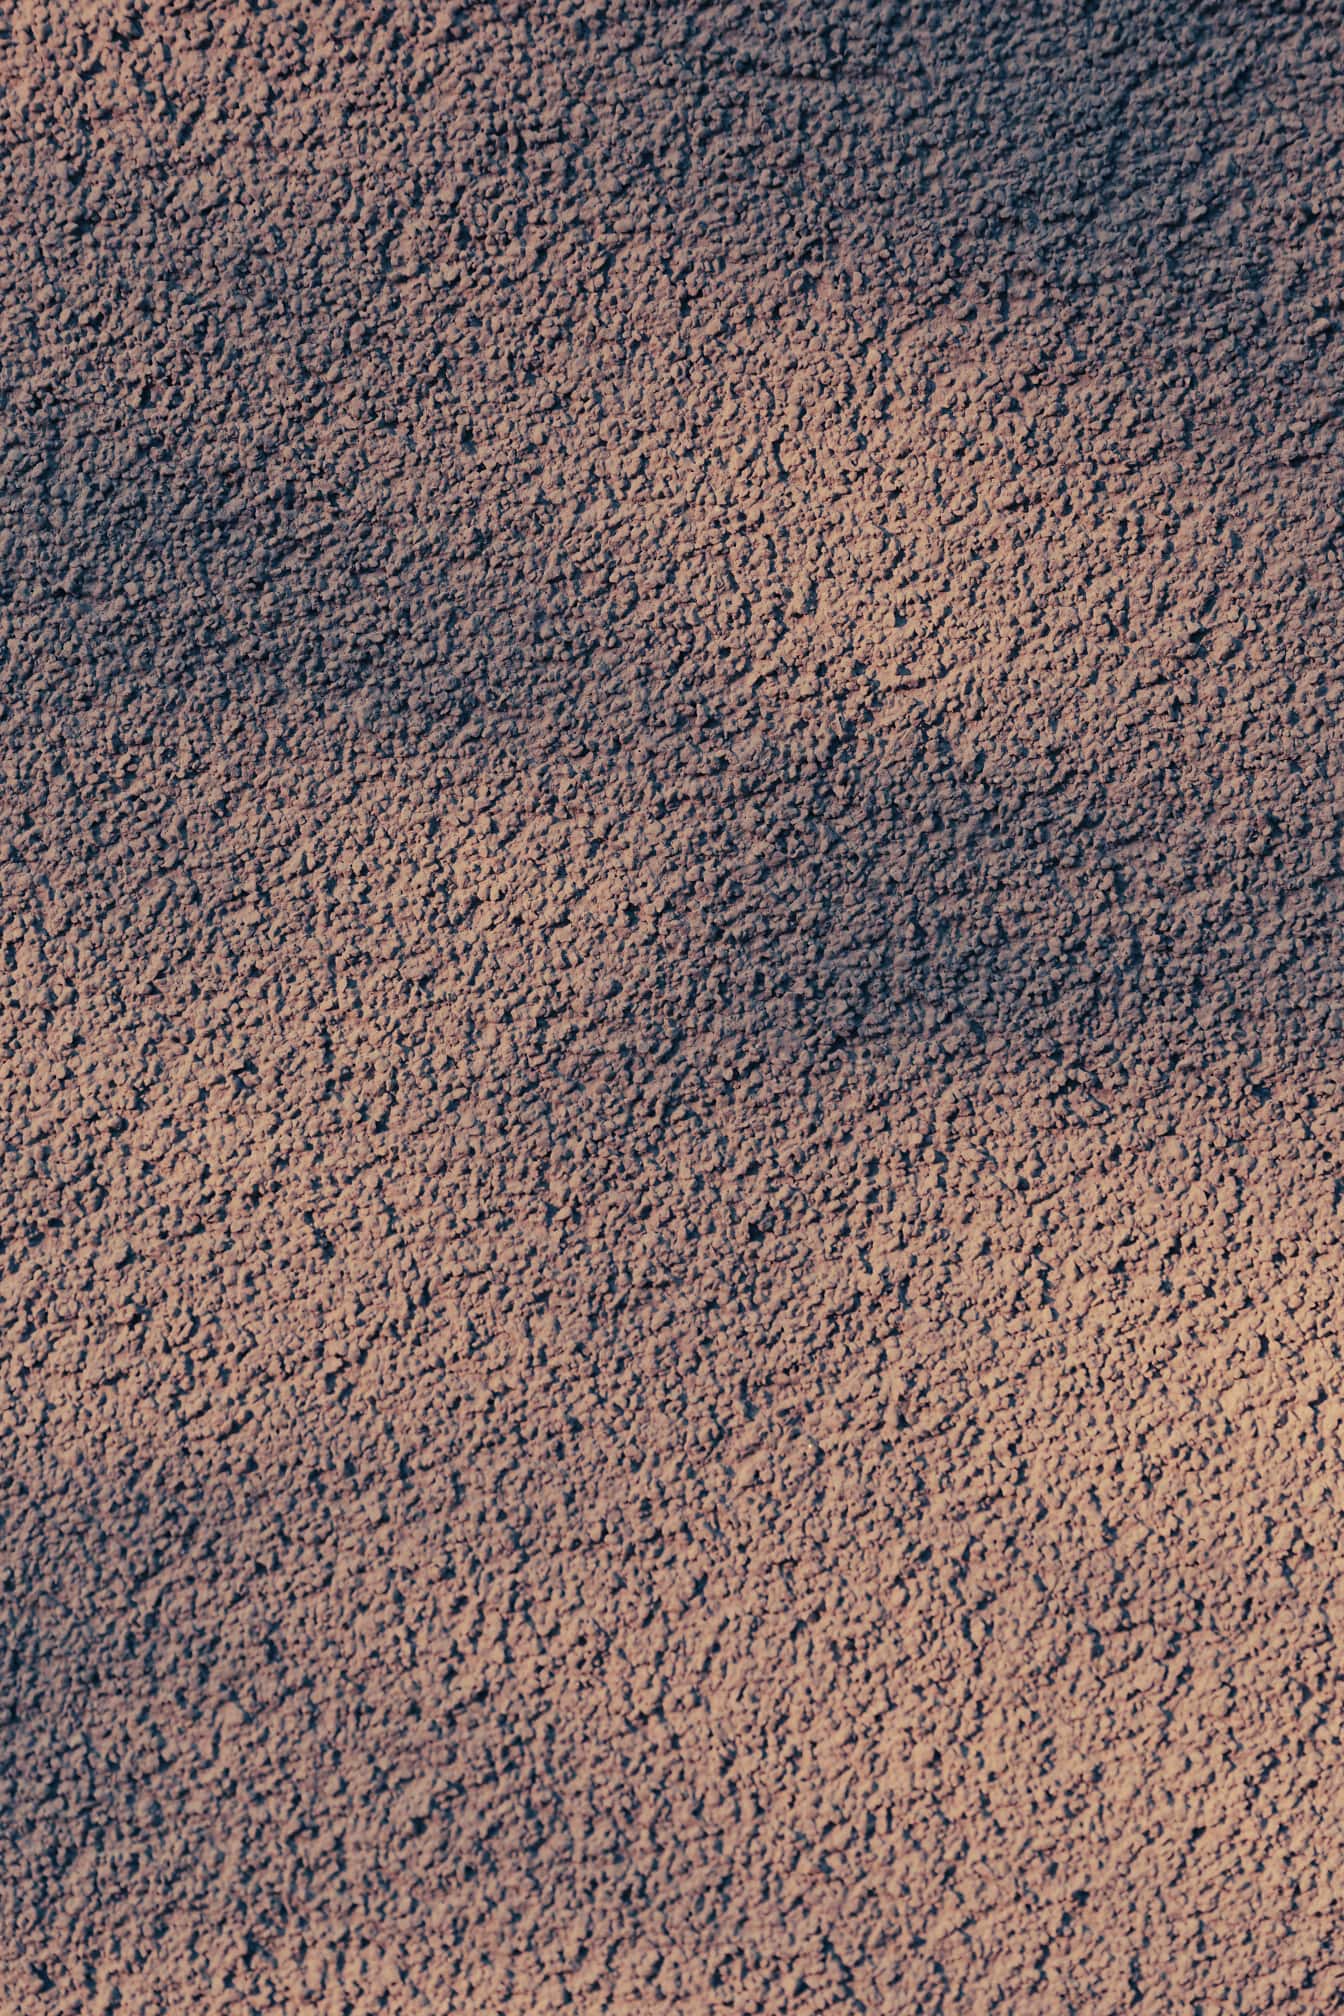 Яркая пурпурная текстура шероховатой цементной стены с тенью